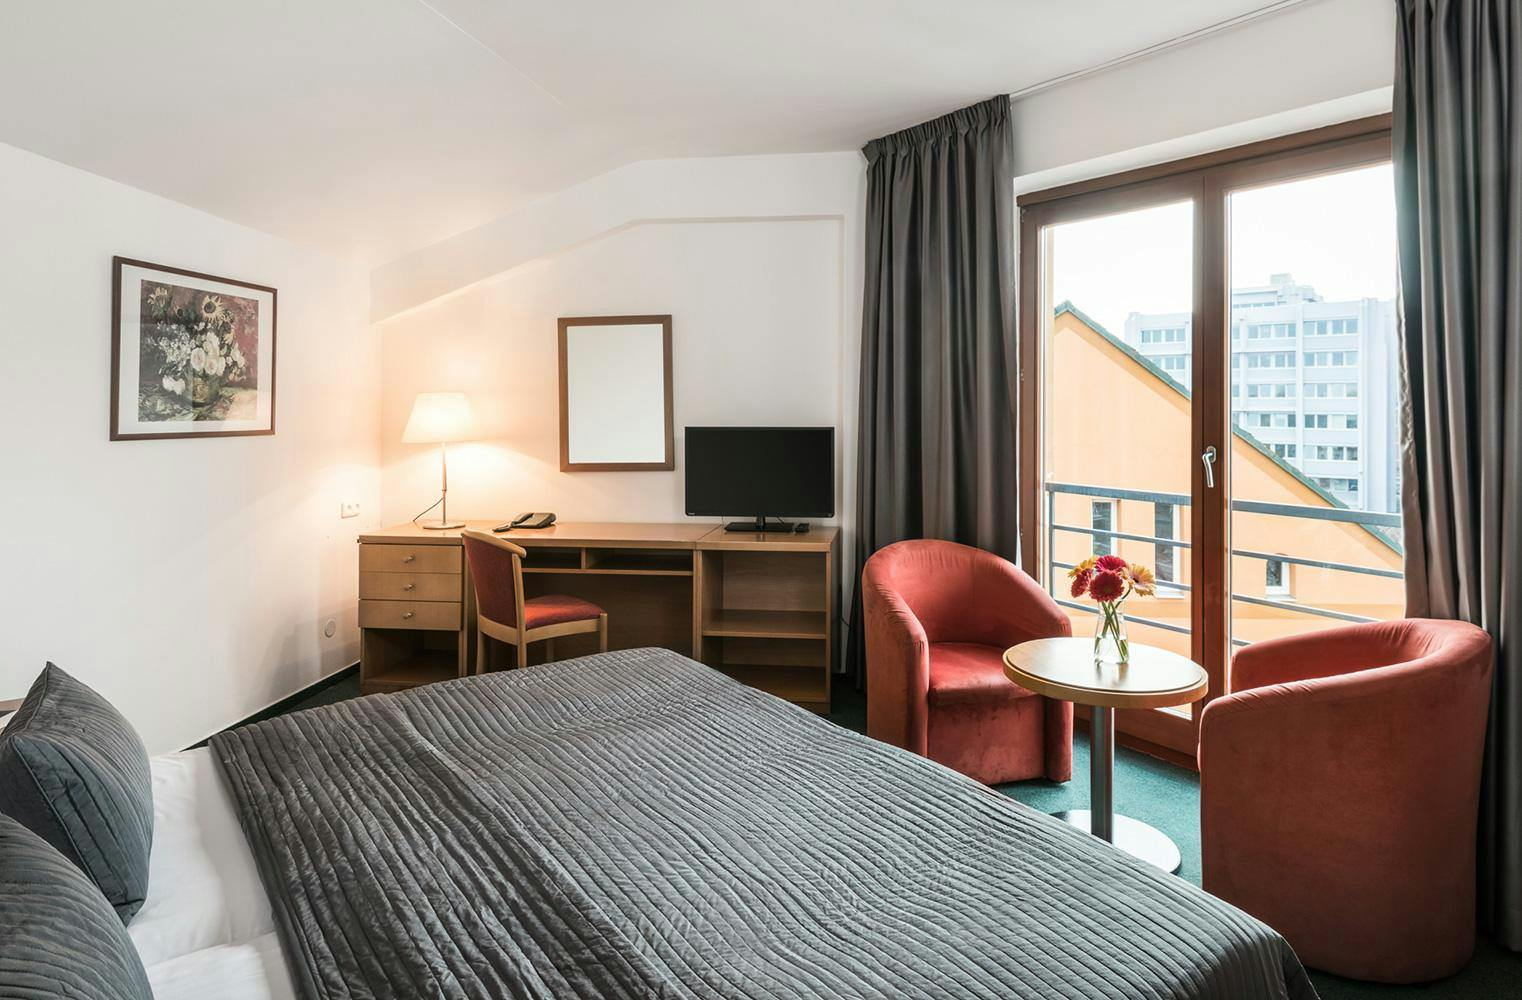 2 ÜN im modernen Hotel | Prag Urlaub zu zweit